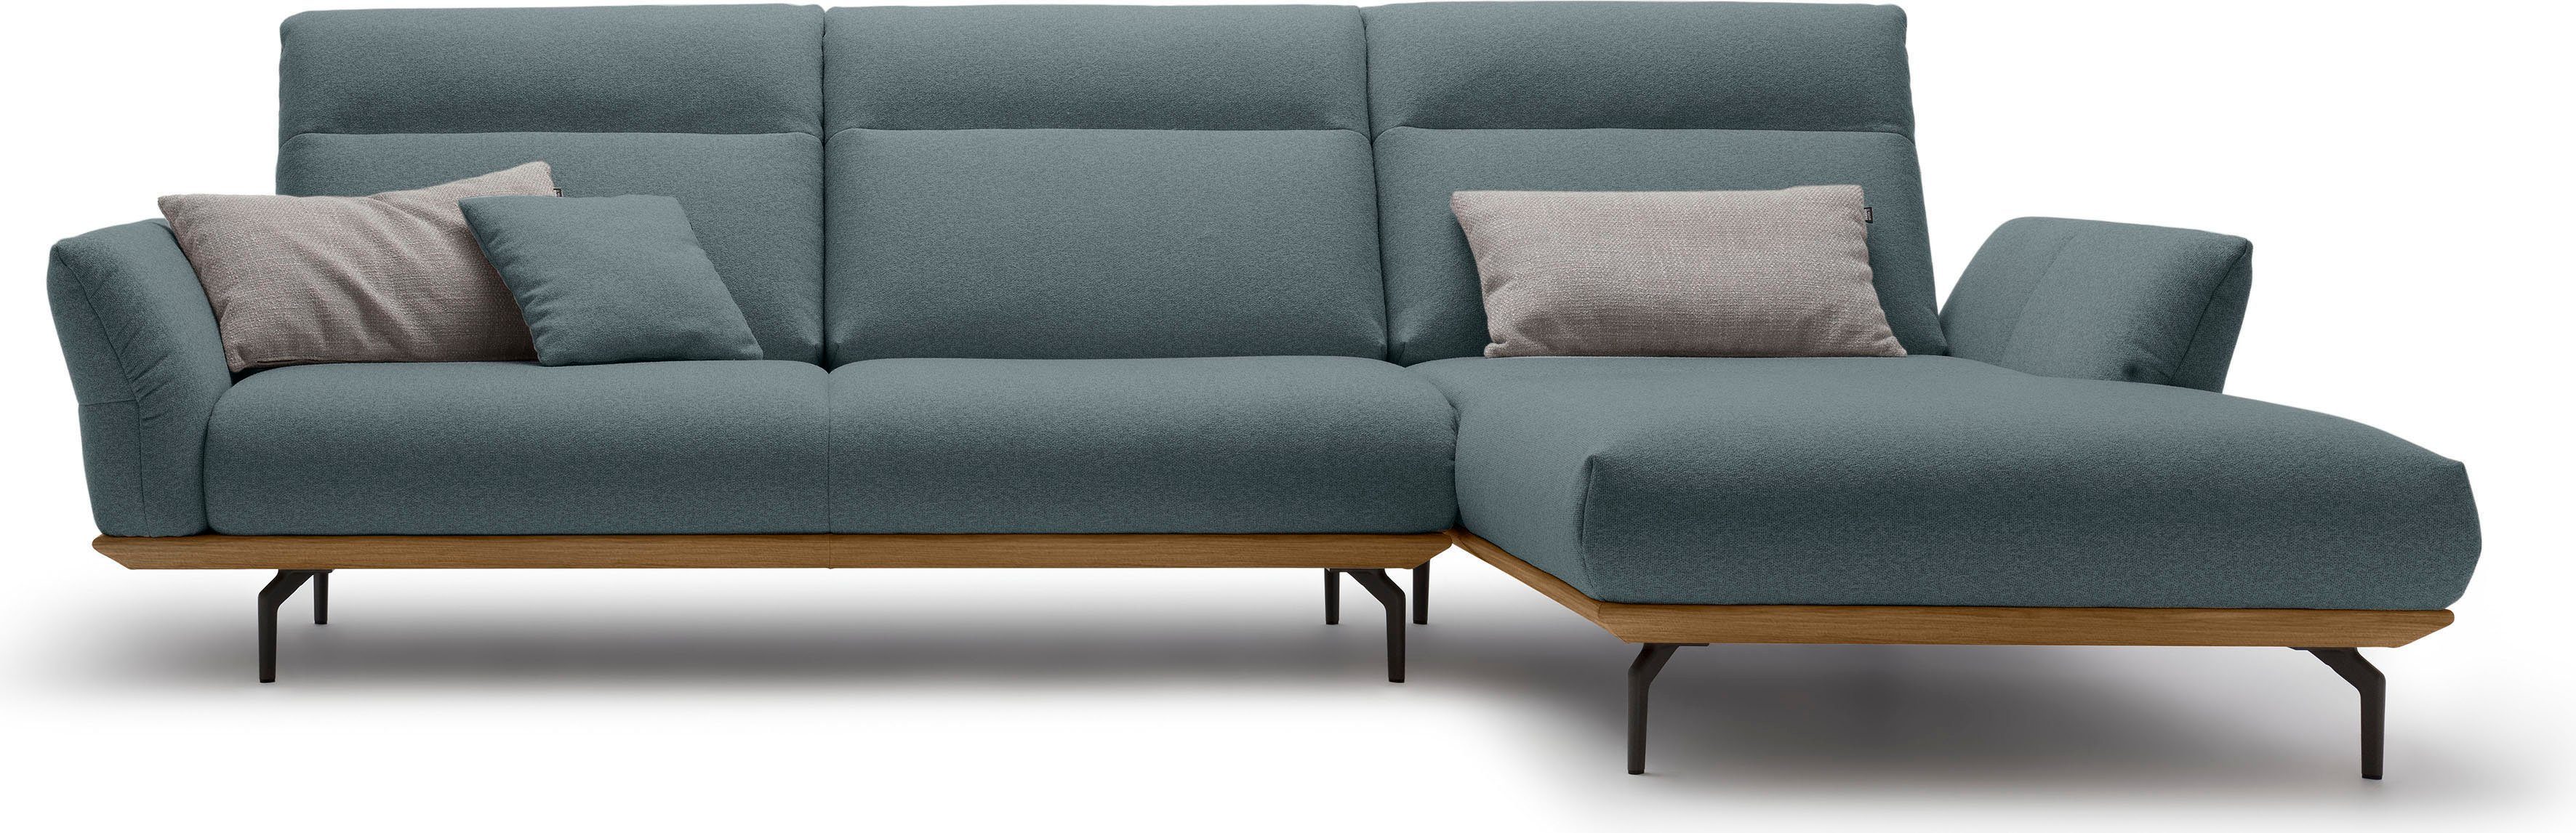 huelsta sofa hoekbank hs.460 sokkel in walnotenhout, onderstel in umbra grijs, breedte 318 cm blauw